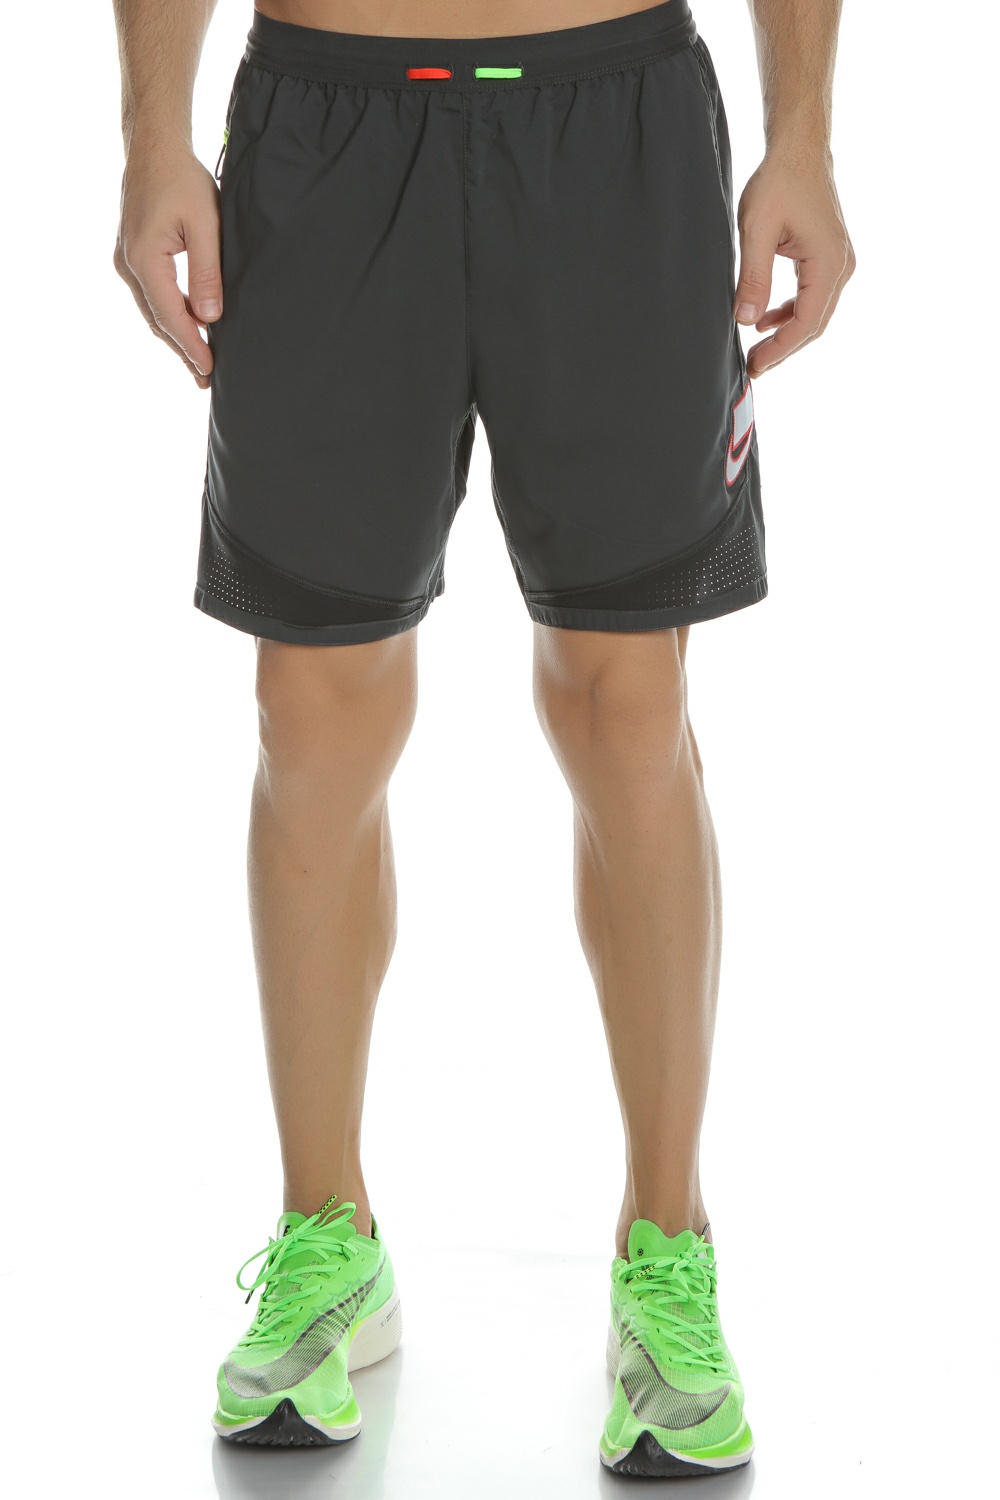 Ανδρικά/Ρούχα/Σορτς-Βερμούδες/Αθλητικά NIKE - Ανδρικό σορτς για τρέξιμο Nike μαύρο